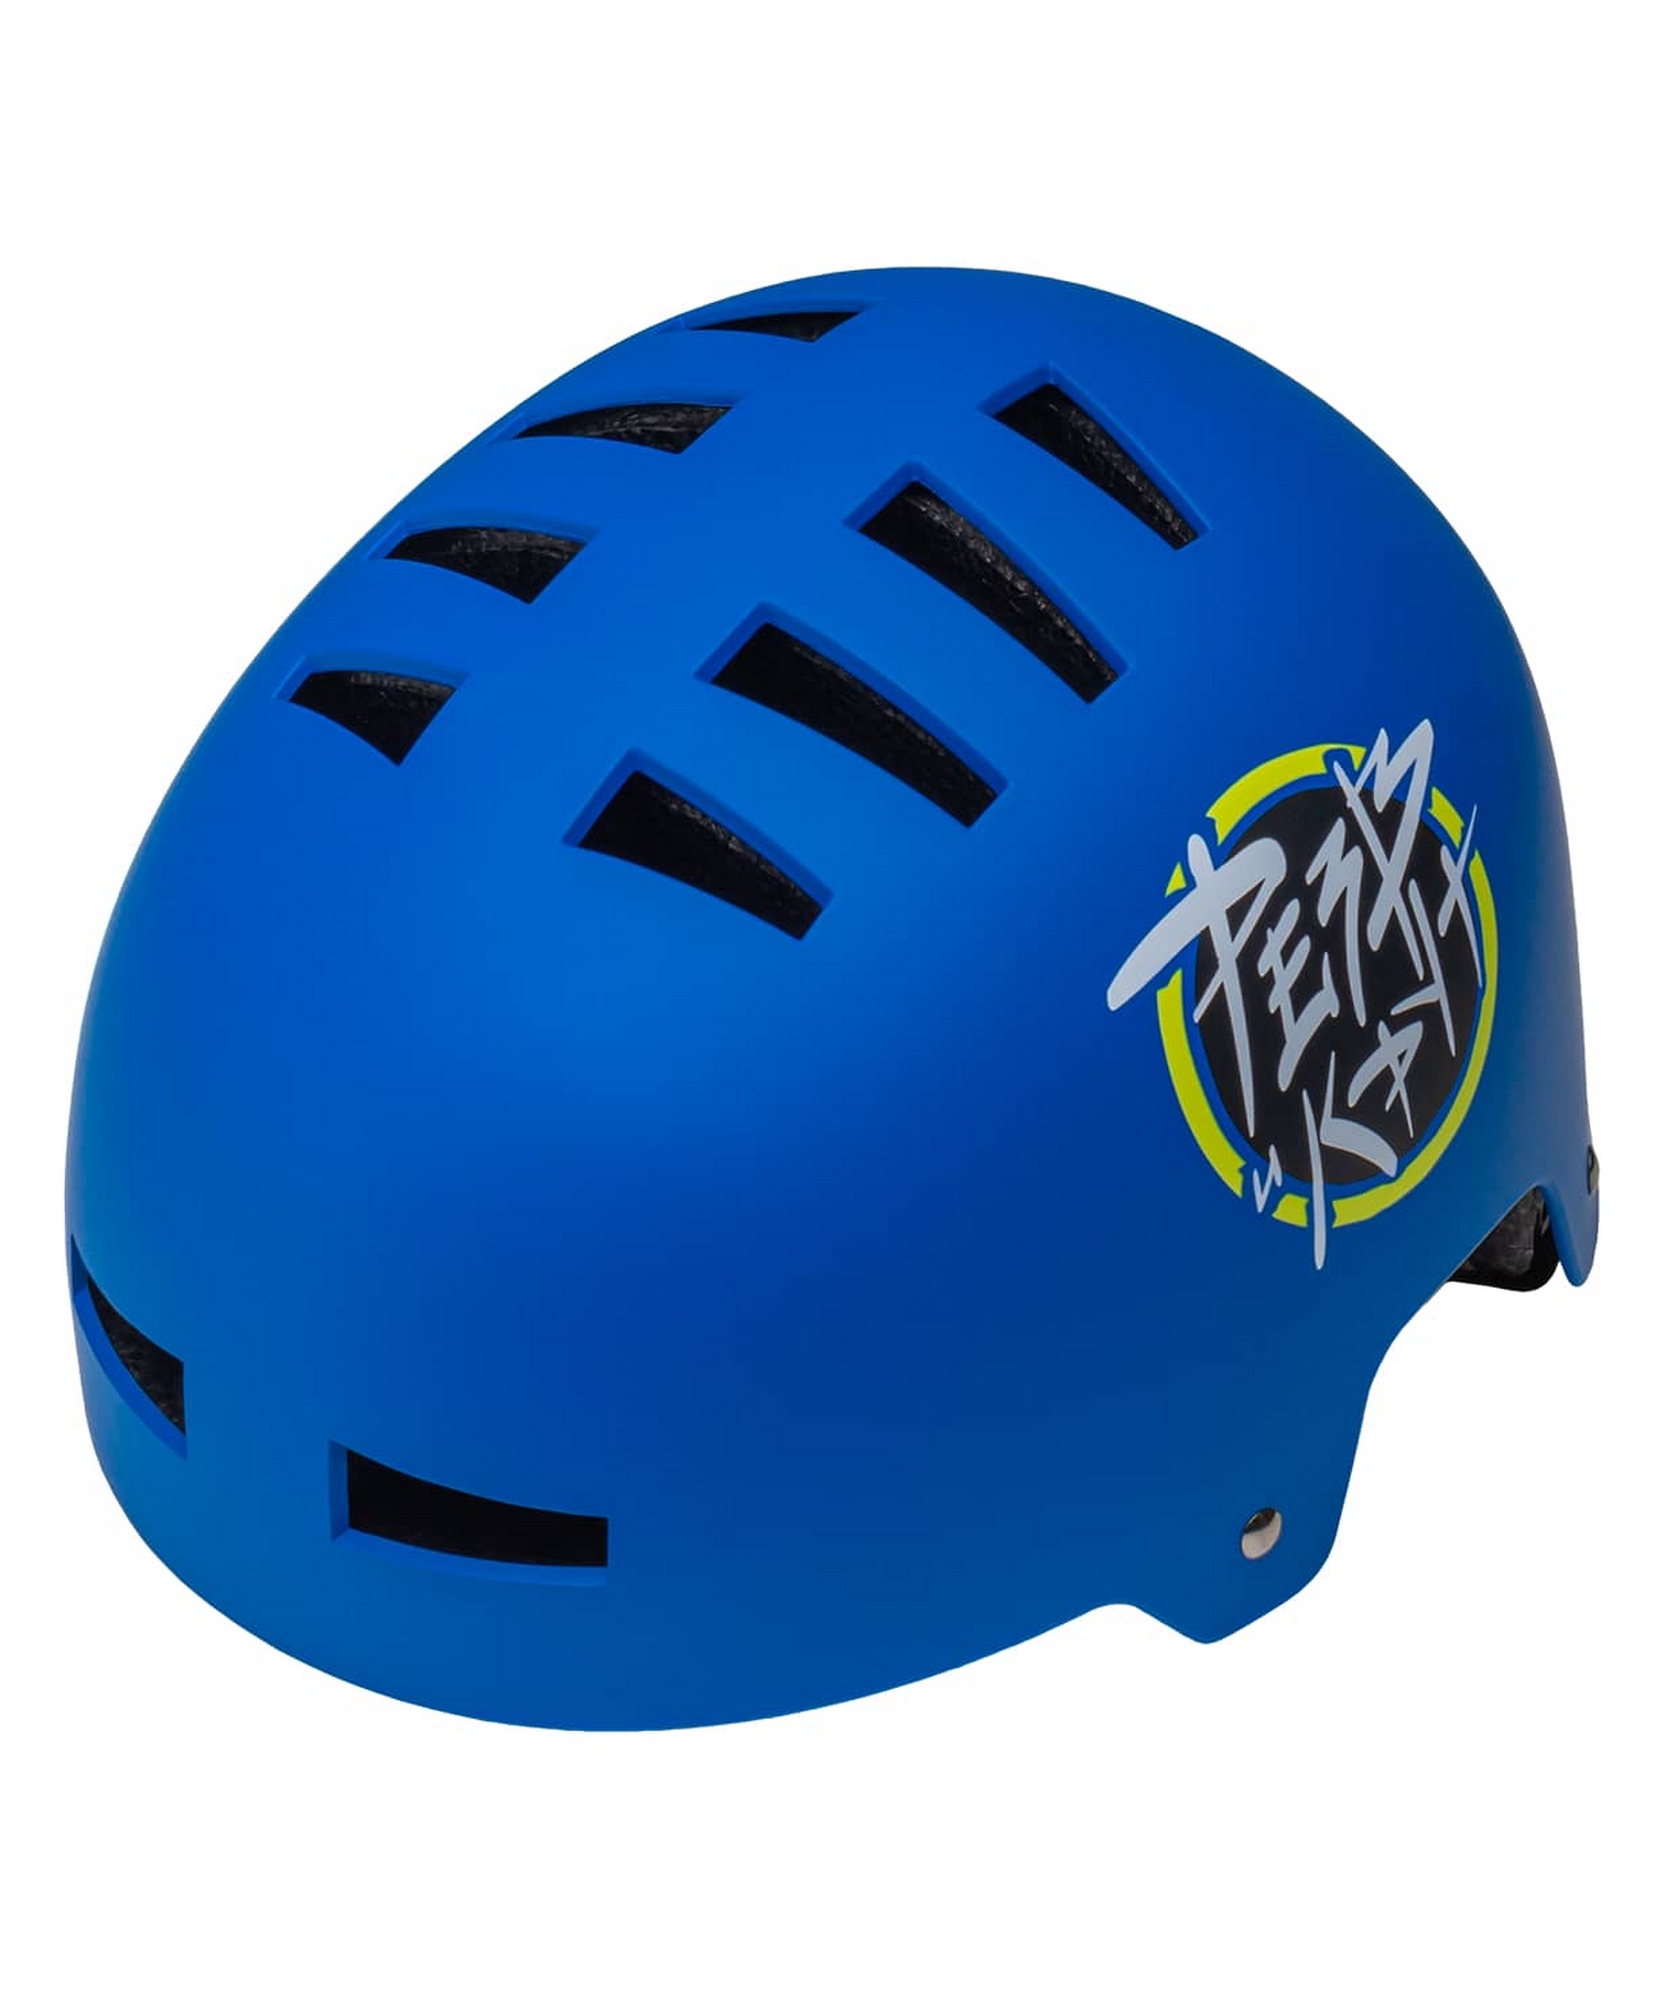 Шлем защитный, с регулировкой Ridex Creative синий 1663_2000